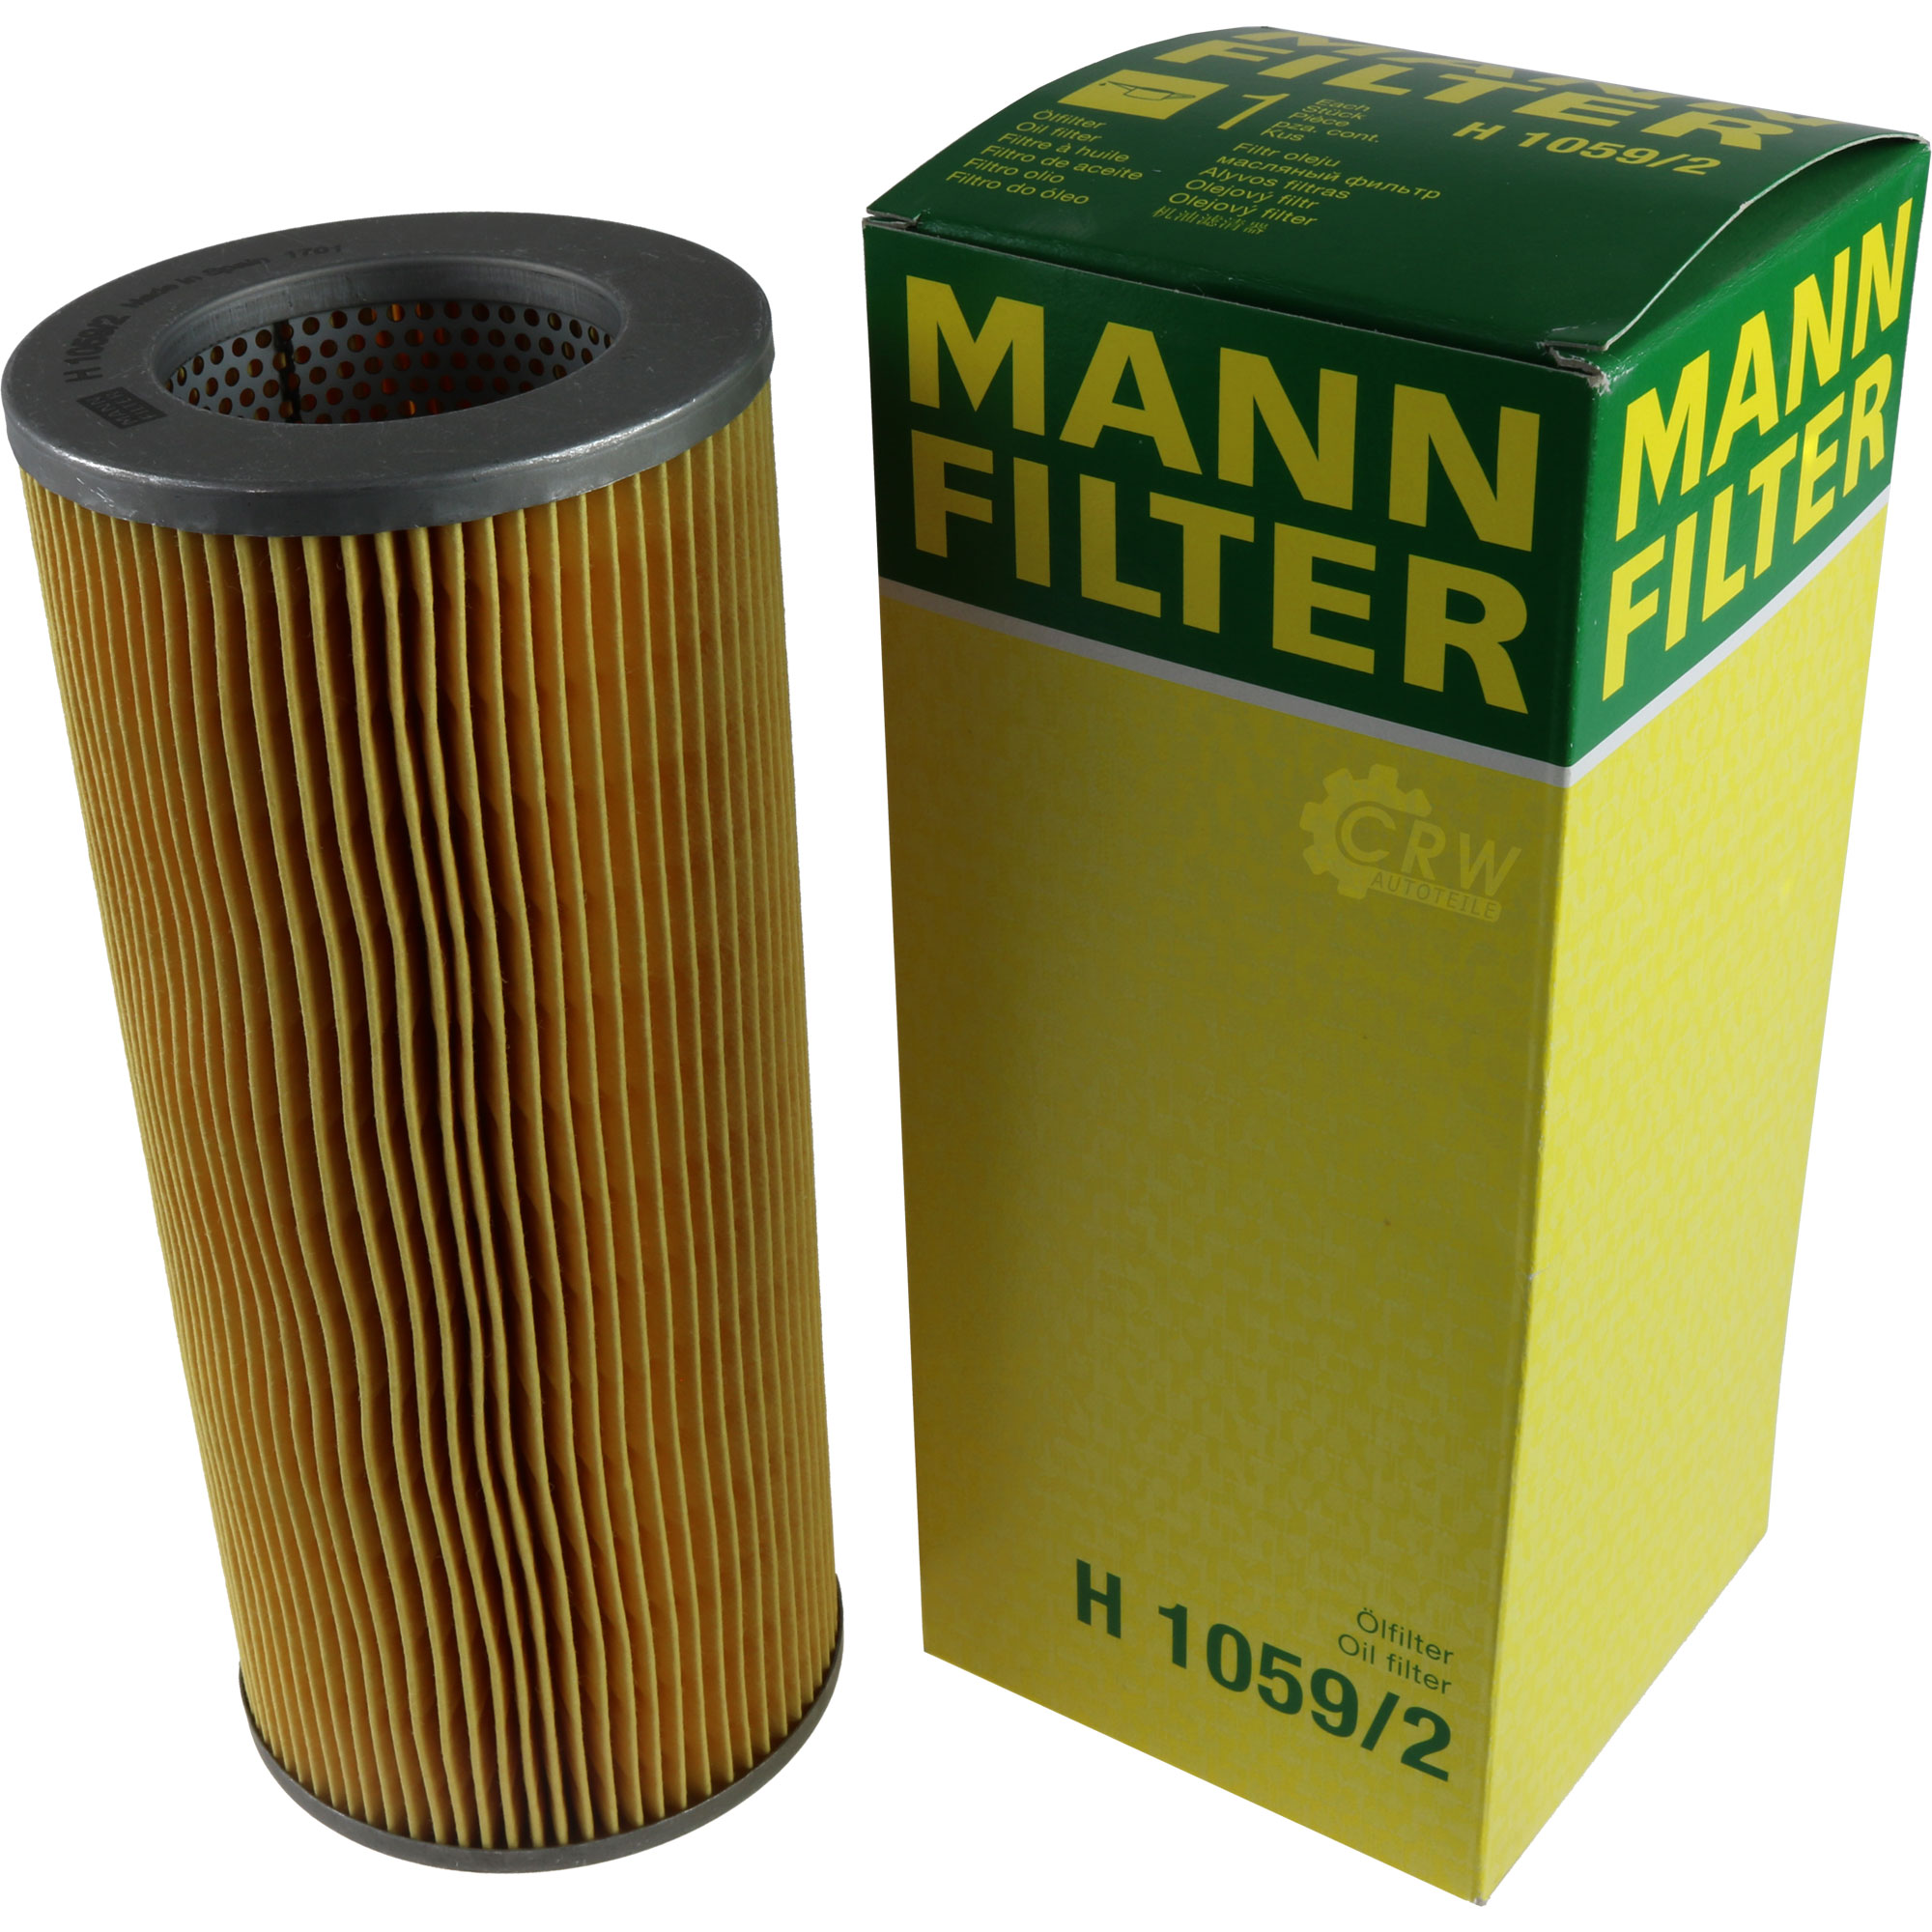 MANN-FILTER Hydraulikfilter für Automatikgetriebe H 1059/2